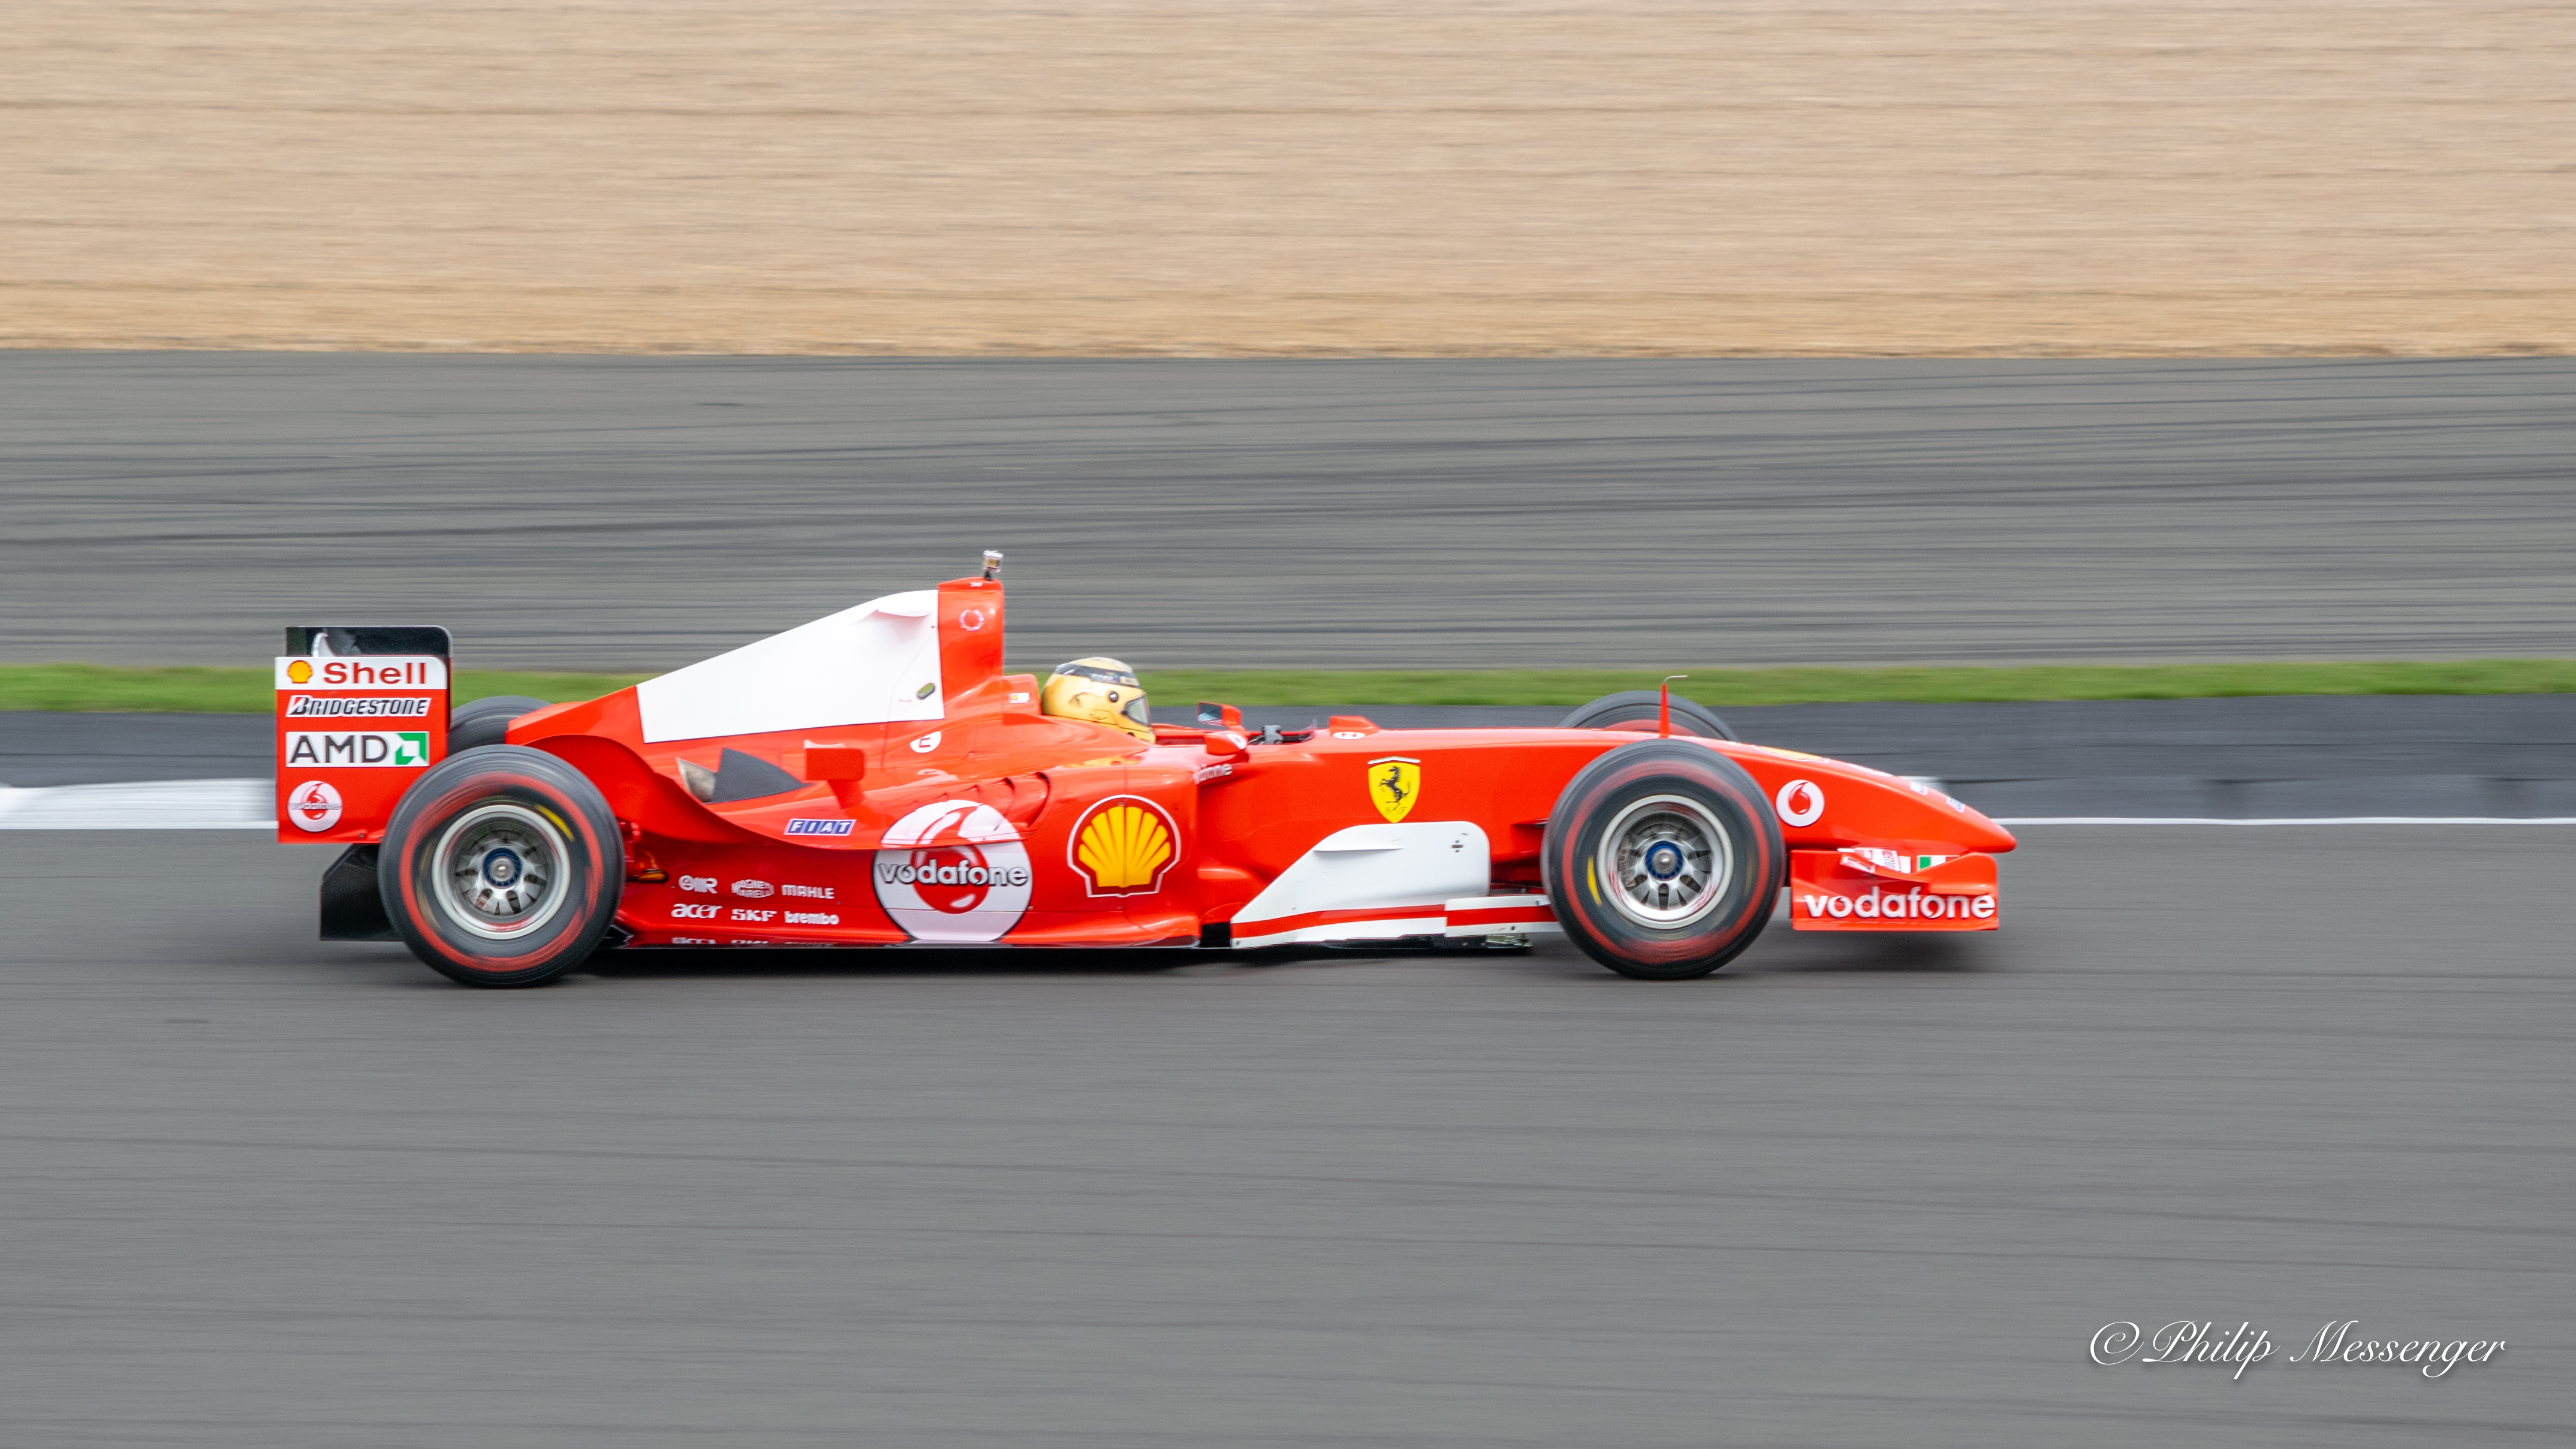 A 2004 Ferrari Formula one car at Silverstone.